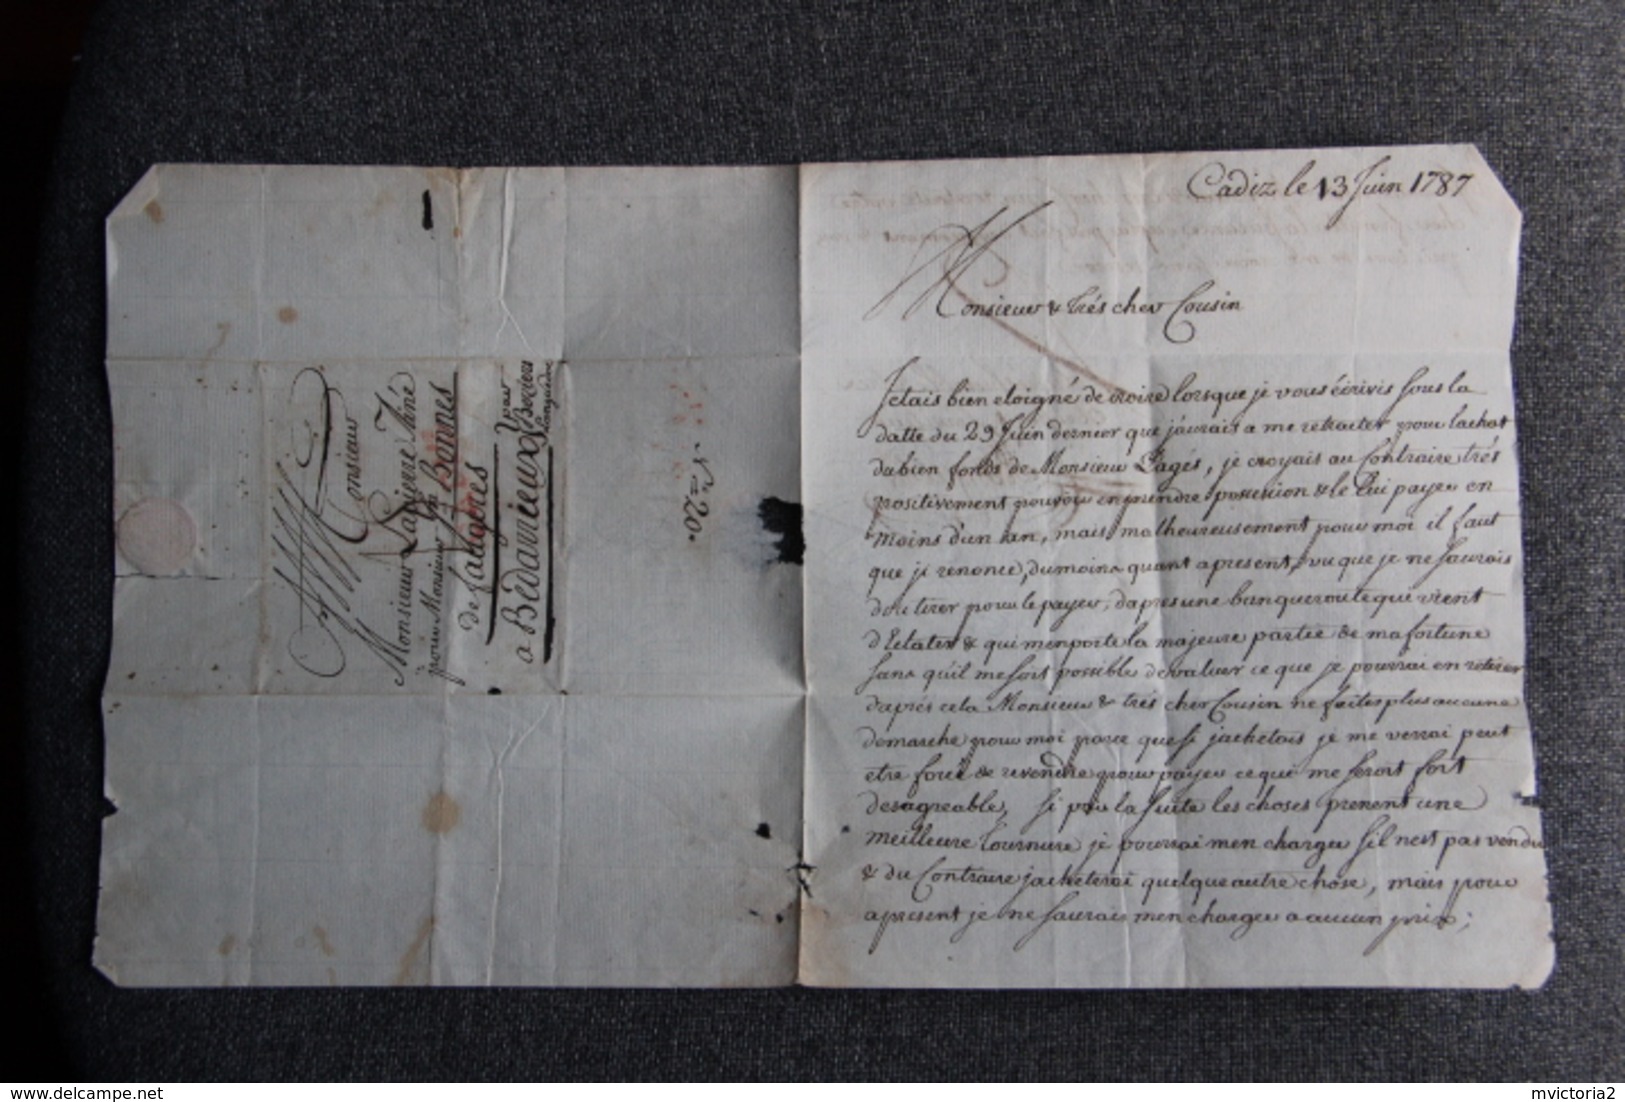 Rare Lettre Manuscrite Adressé De CADIZ En ESPAGNE à  BEDARIEUX Le 13 JUIN 1787, Superbe écriture. - Manuscripts